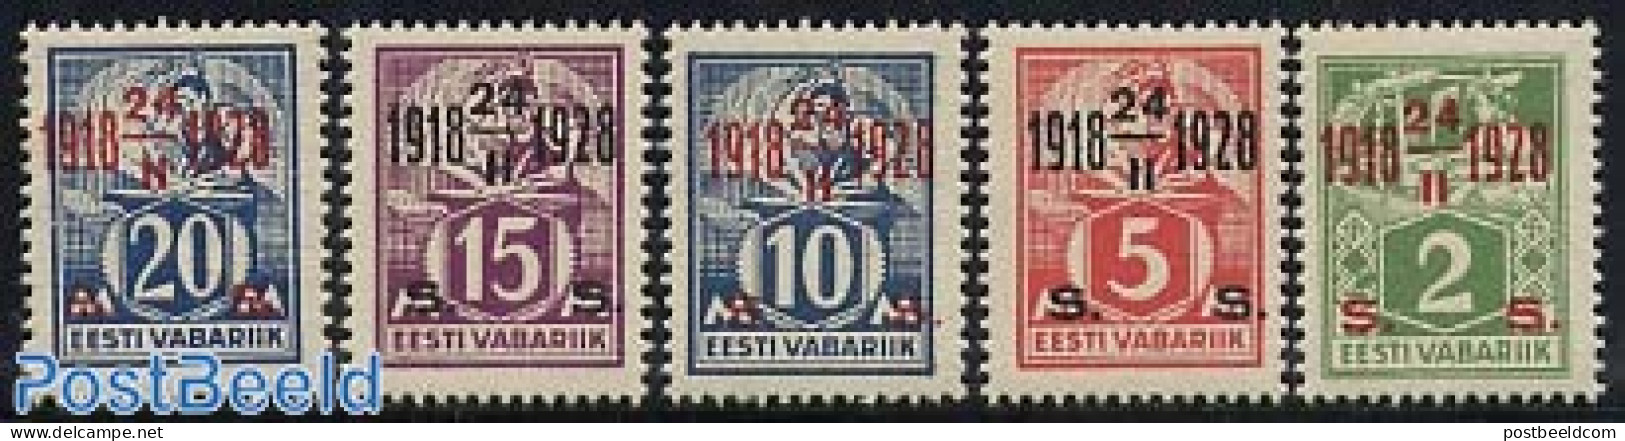 Estonia 1928 Definitives, Overprinted 5v, Mint NH - Estonia